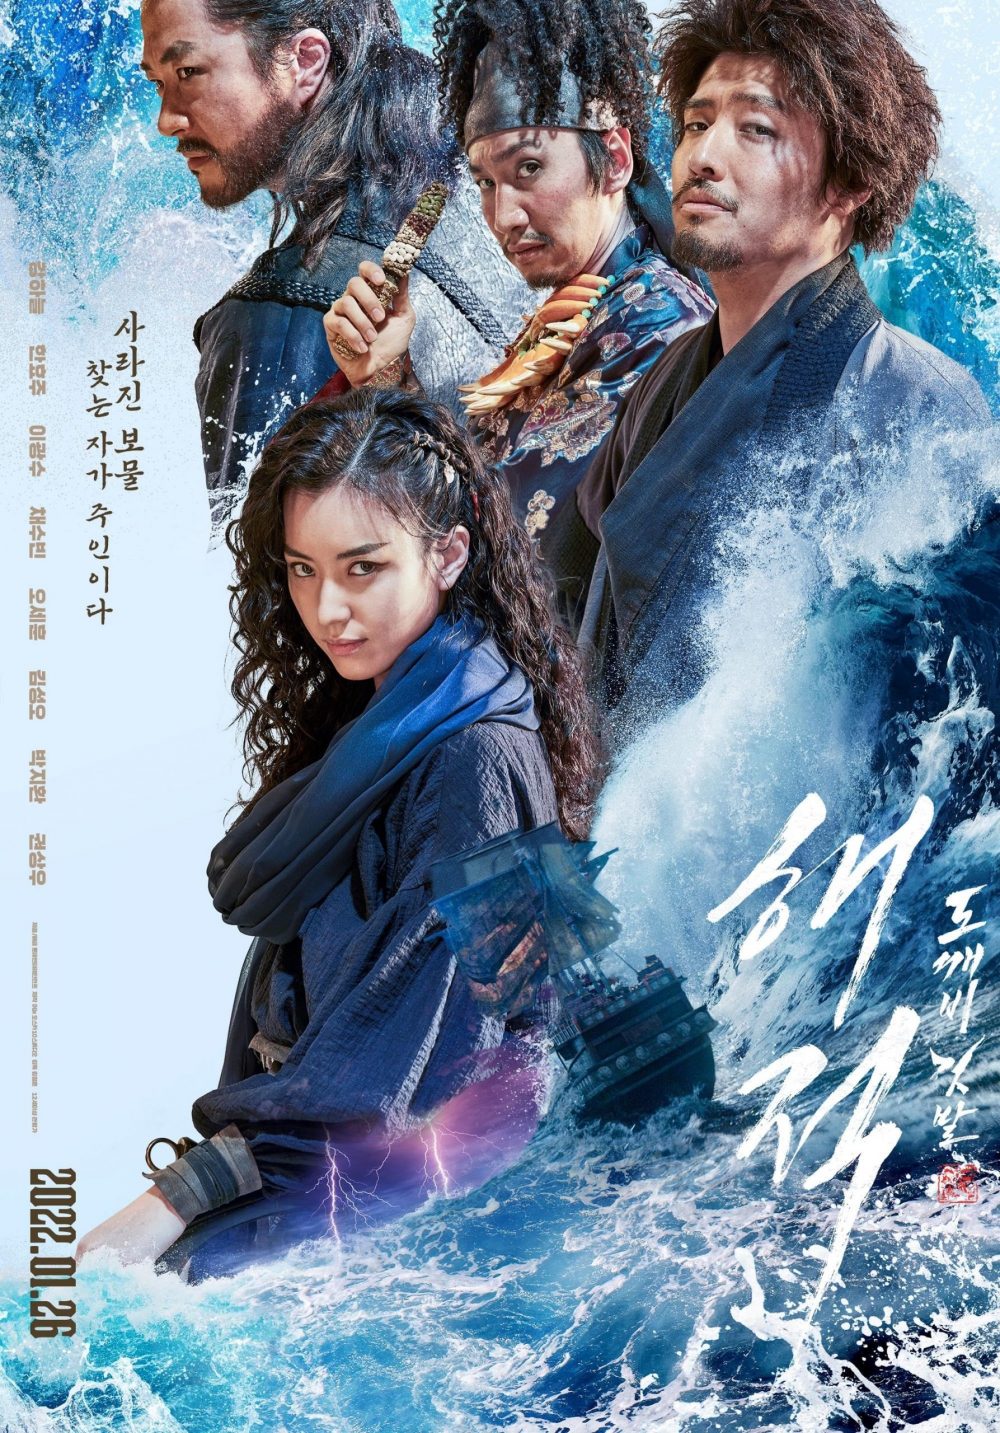 Phim mới của Kwon Sang Woo: Hải tặc 2: Kho báu hoàng gia cuối cùng - The Pirates 2: The Last Royal Treasure (2022) 